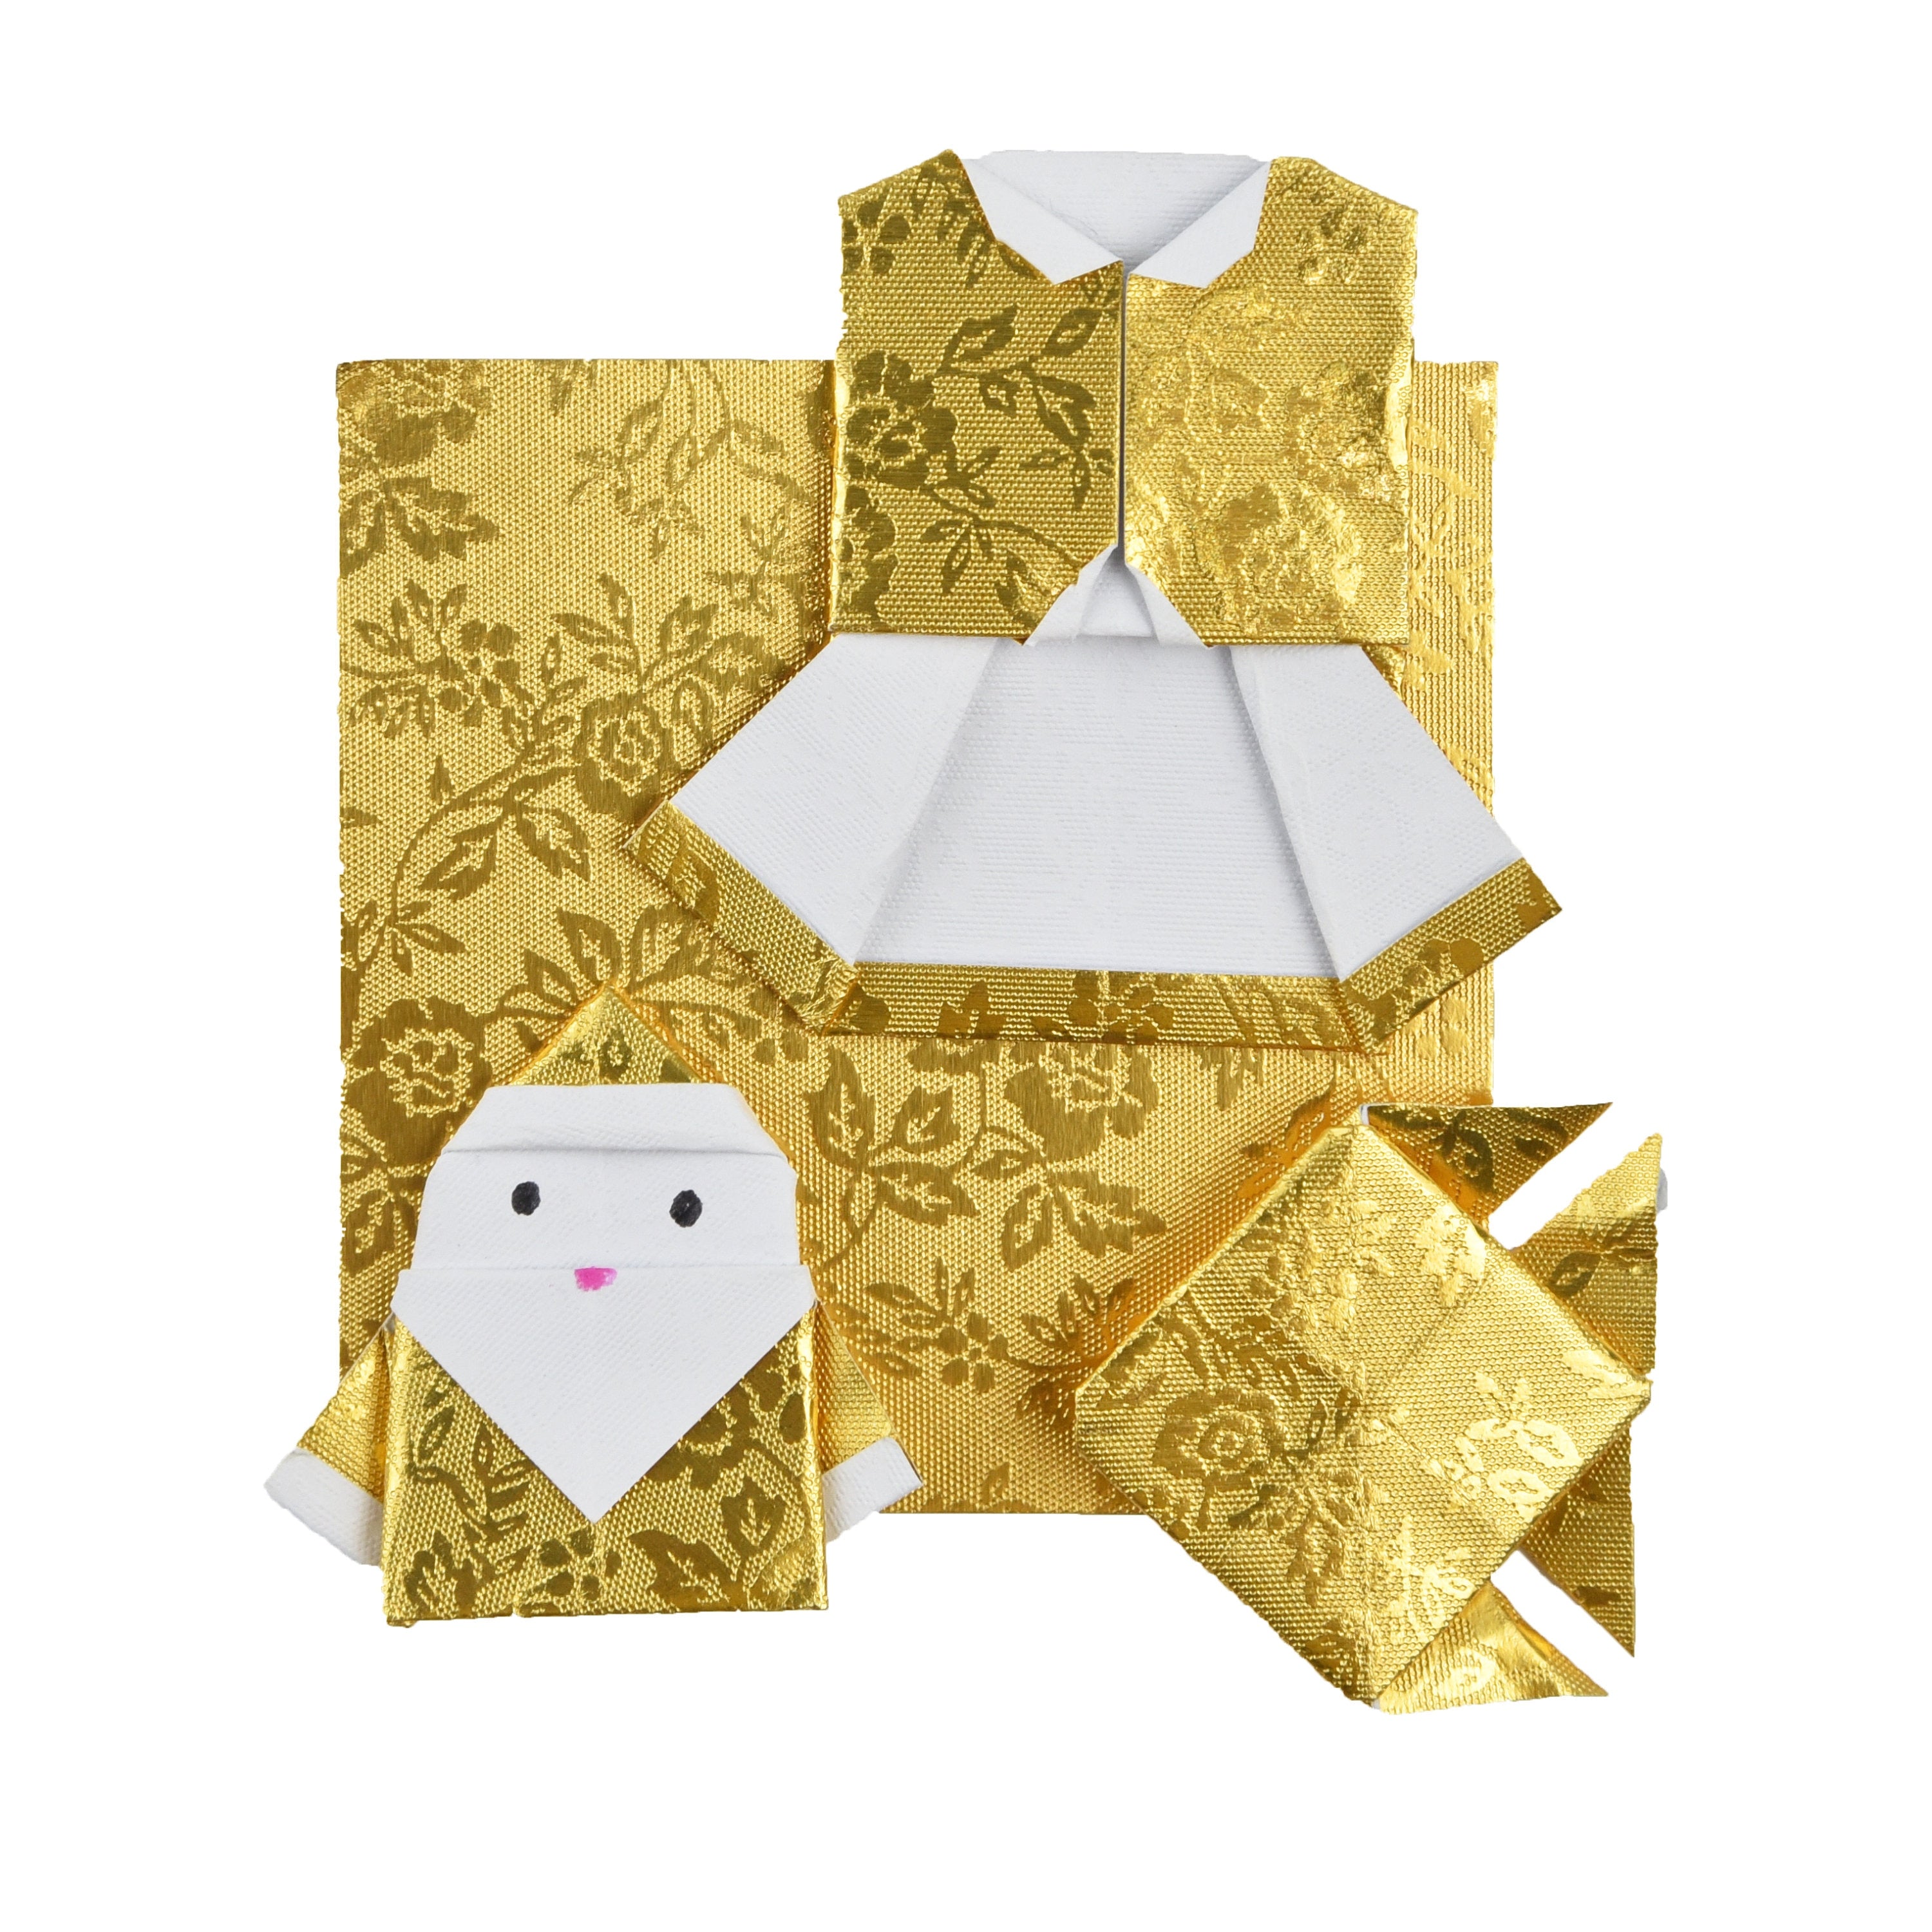 100 fogli di carta origami dorati - 6x6 pollici - per carta pieghevole, gru origami, decorazione origami